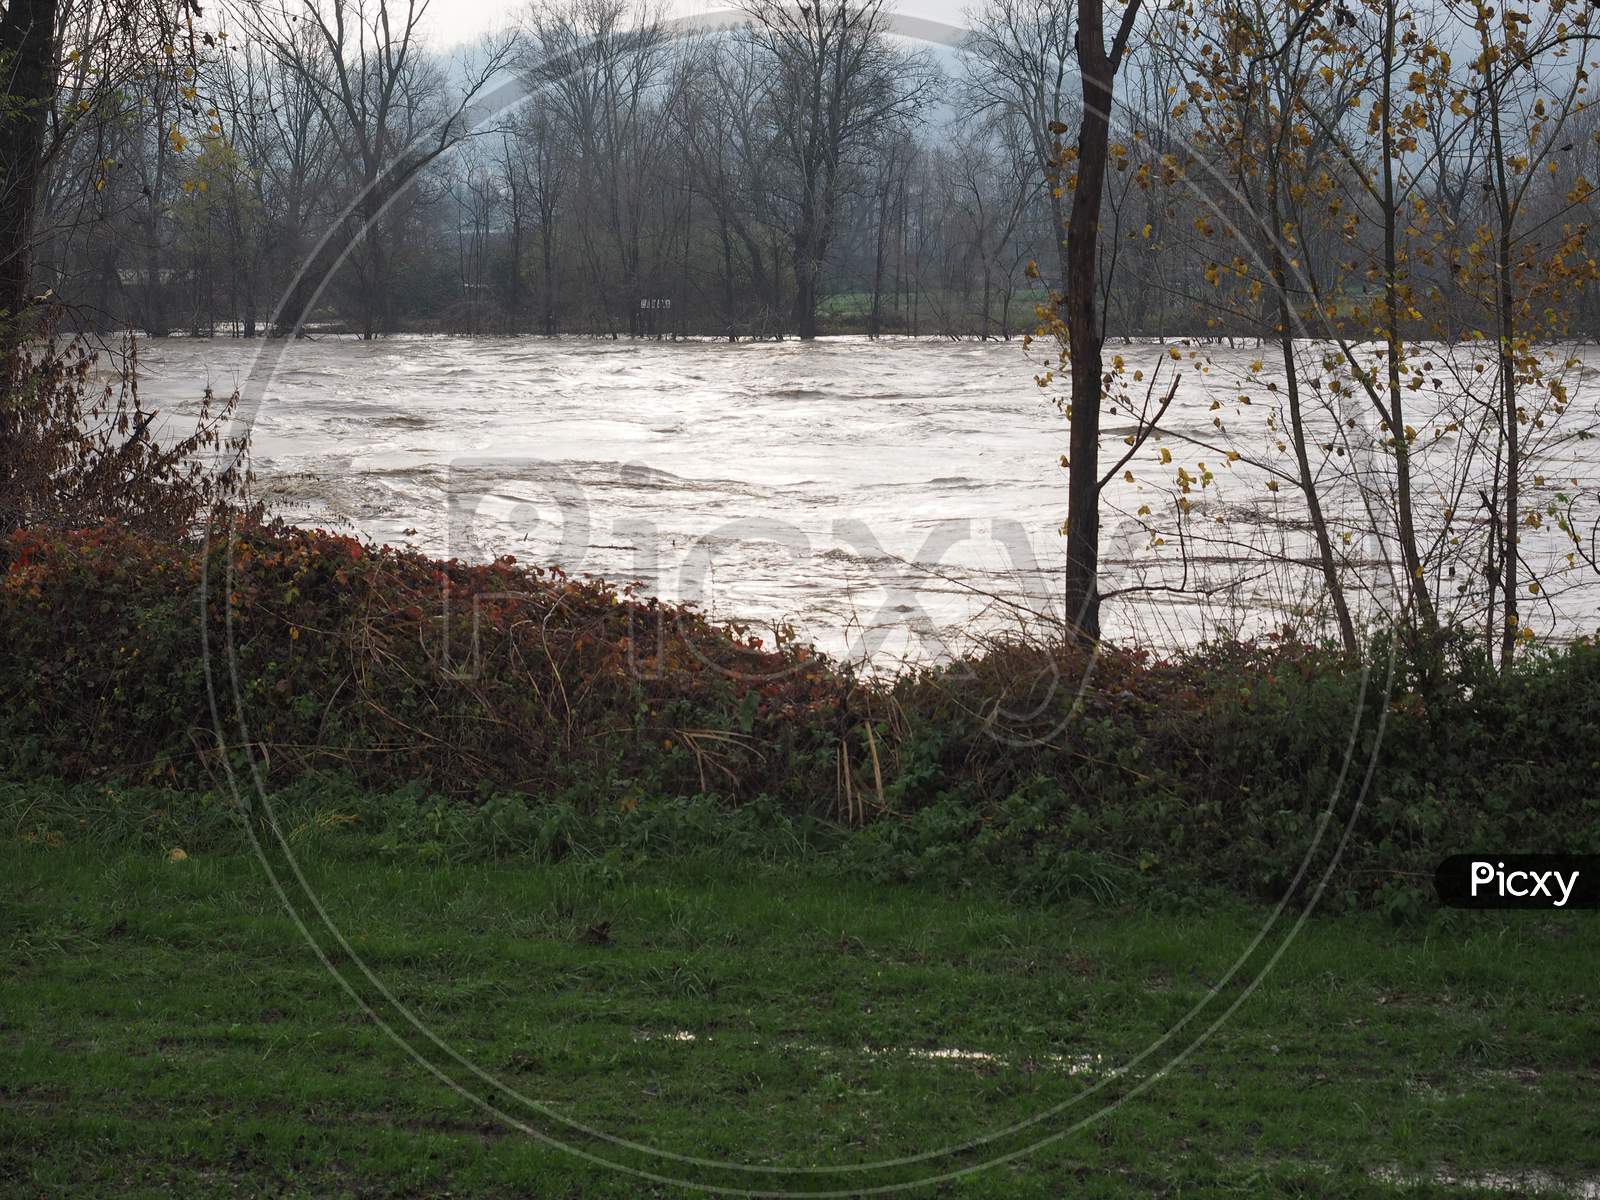 River Po Flood In Turin